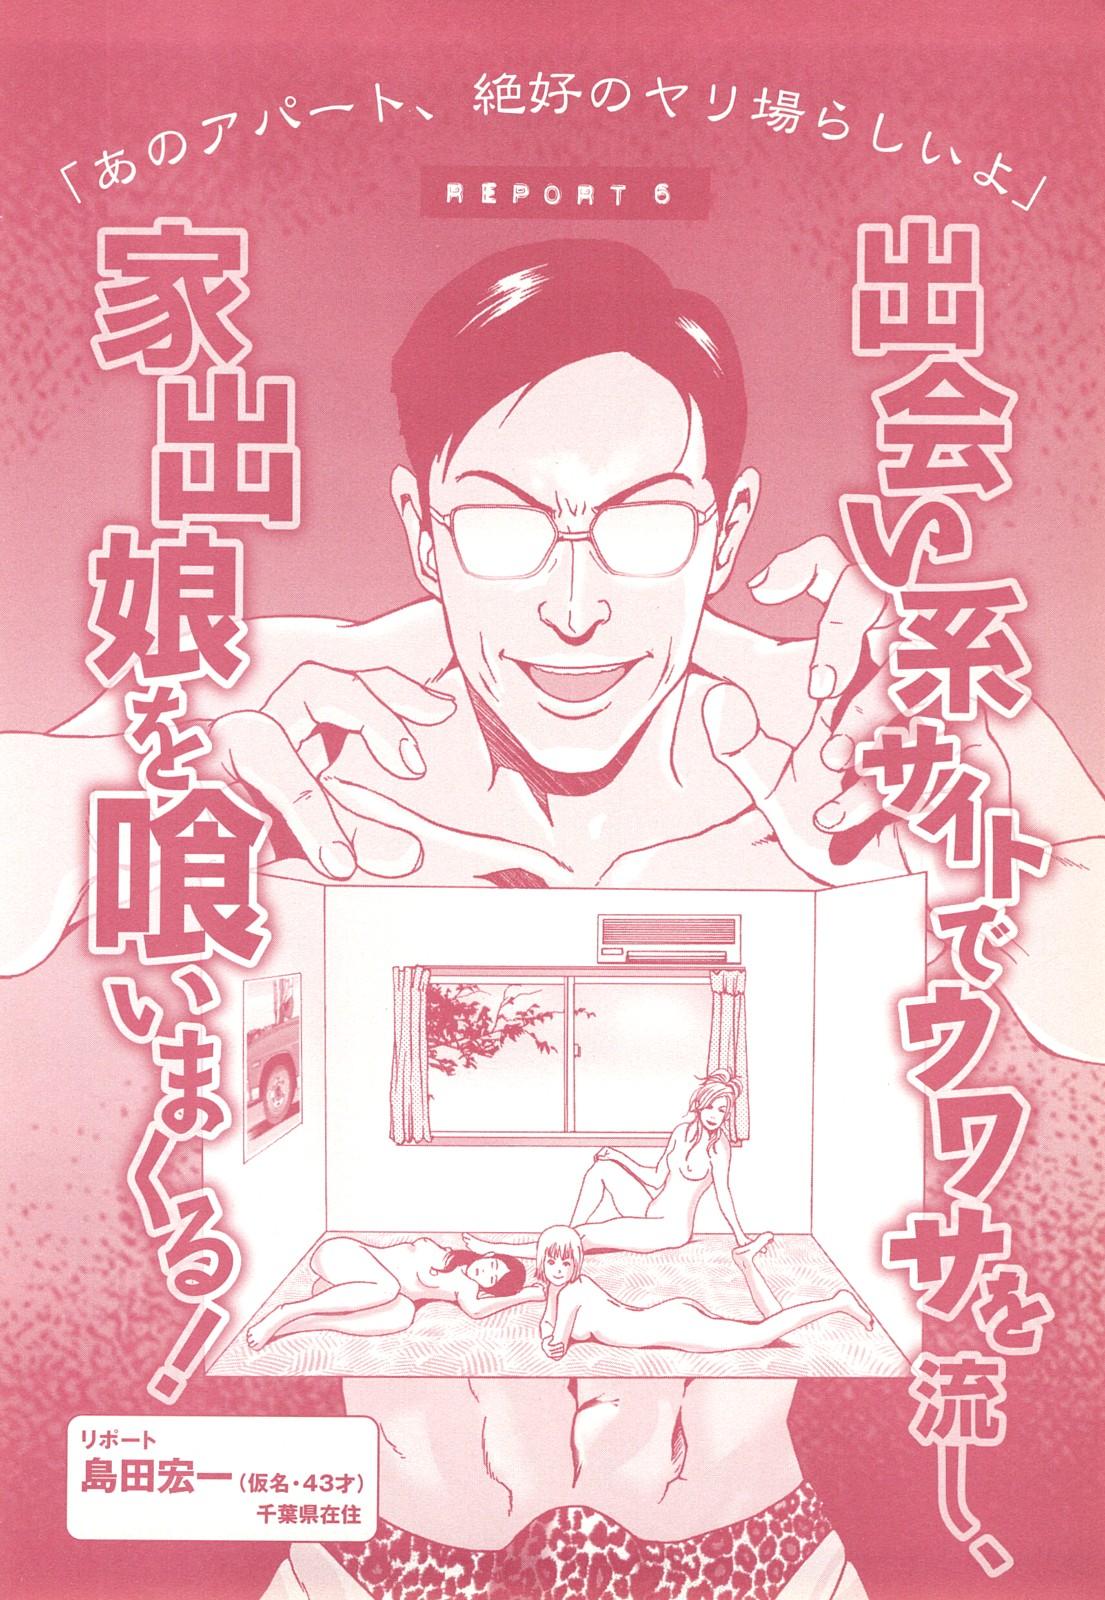 コミック裏モノJAPAN Vol.18 今井のりたつスペシャル号 91